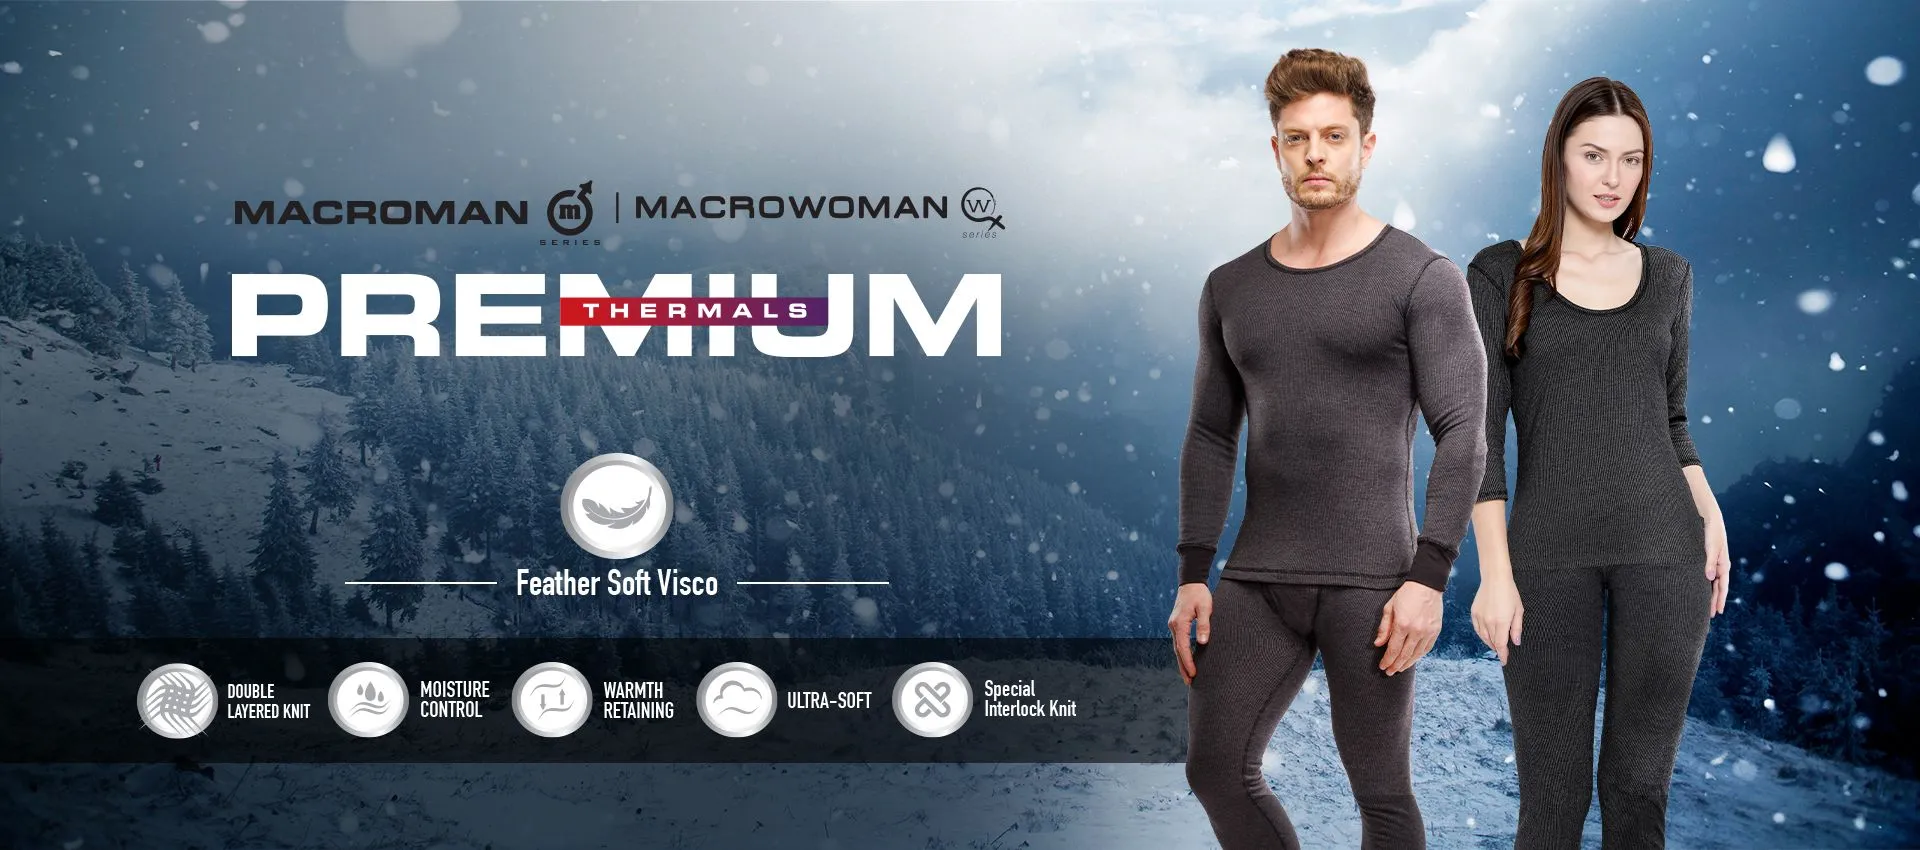 Macrowoman W-Series Women Camisole - Buy Macrowoman W-Series Women